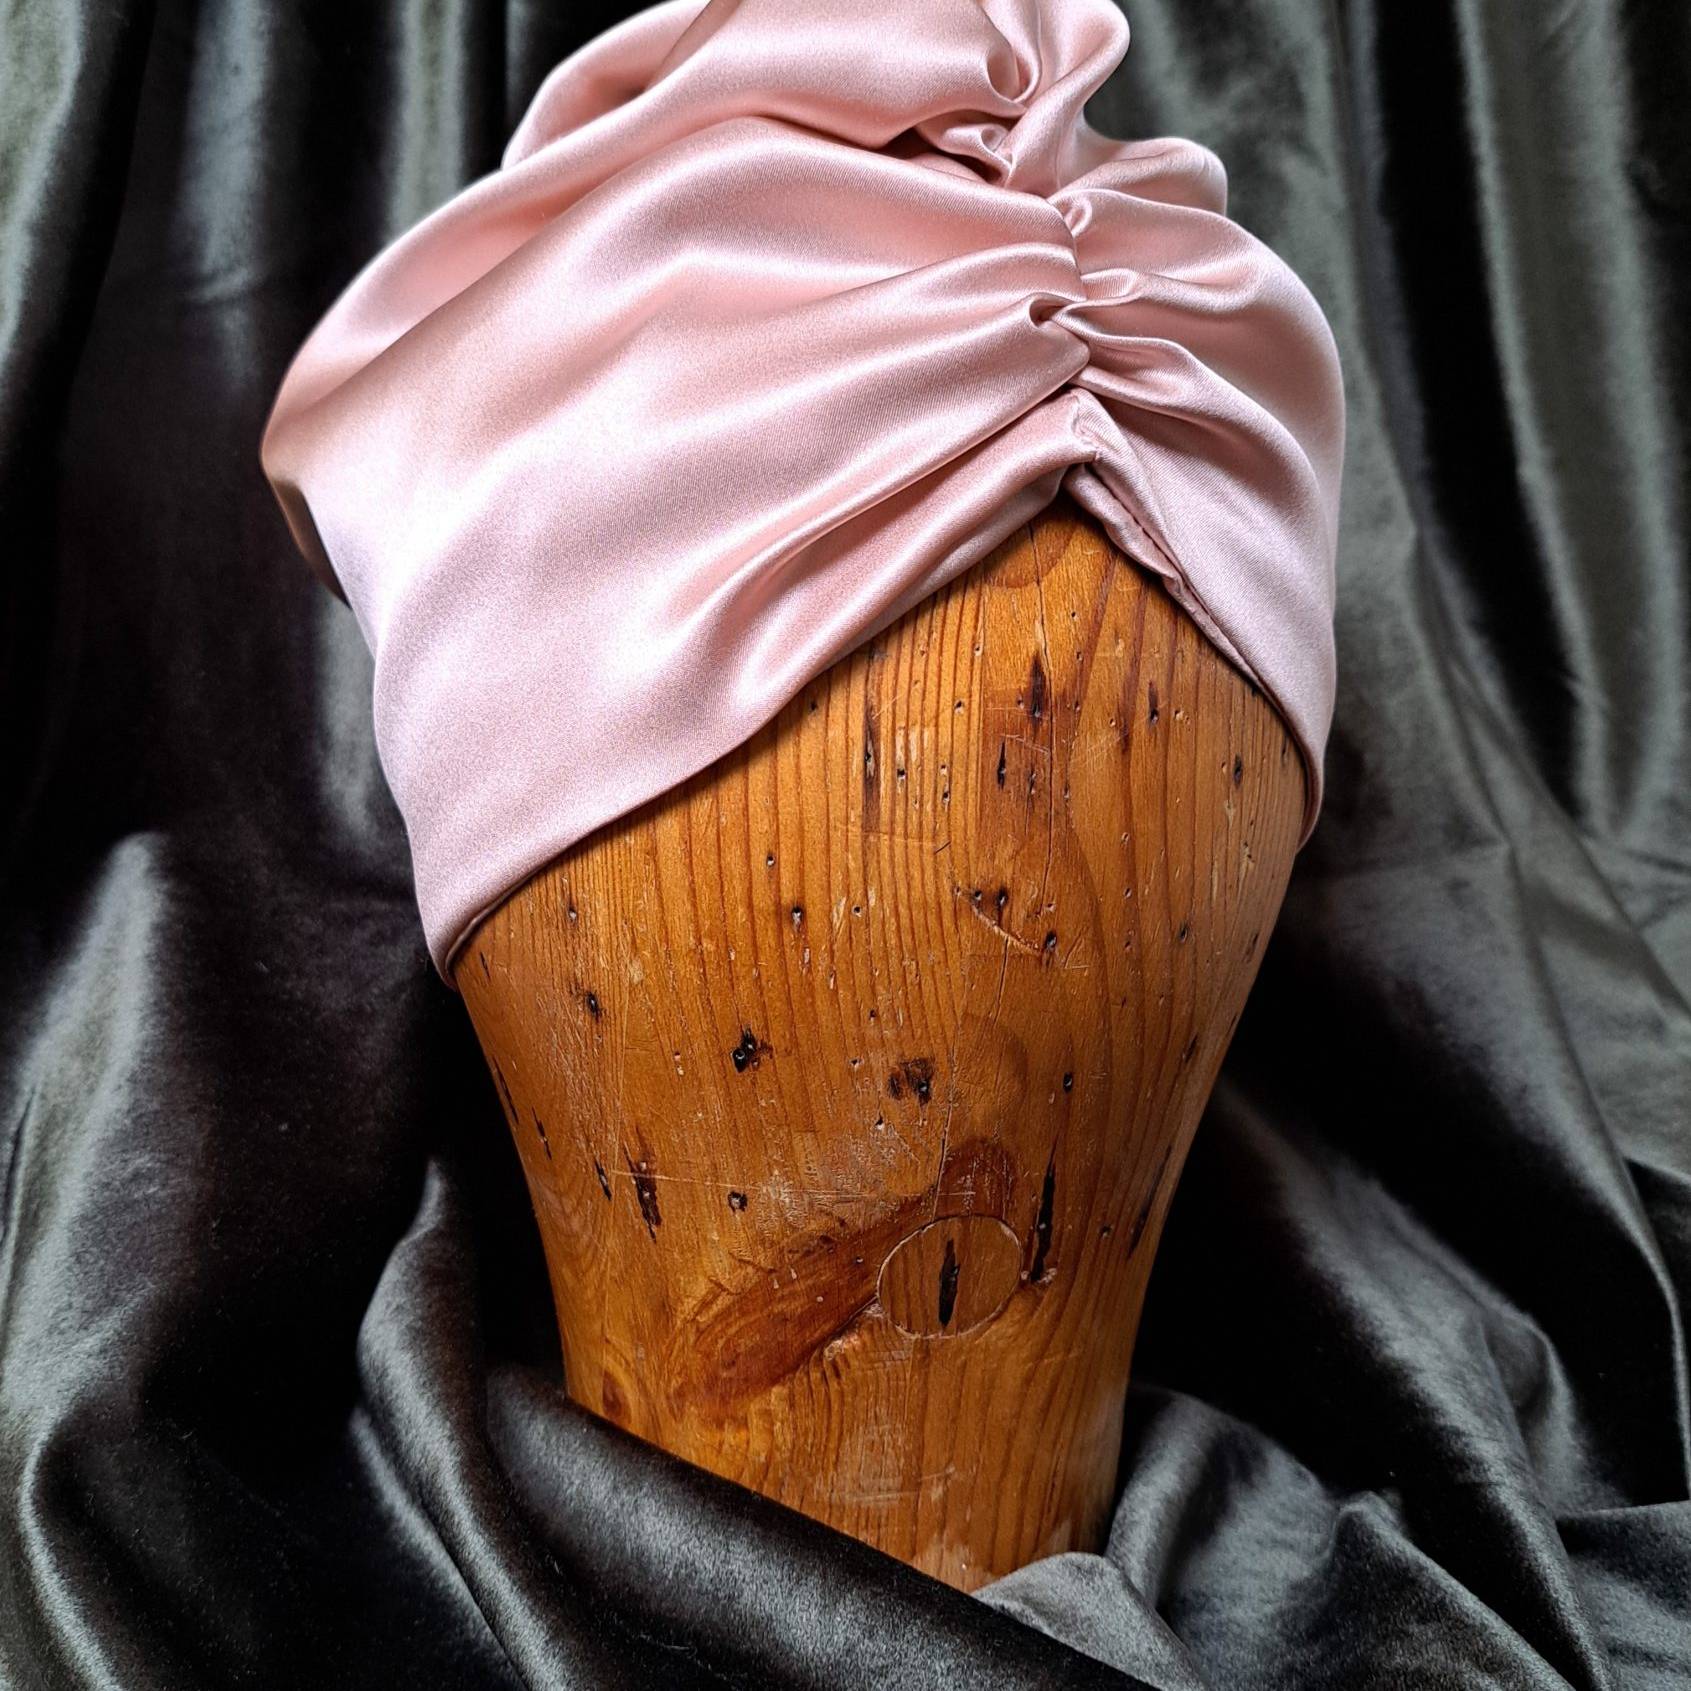 Unibonnet headgear in a wooden rack. Surrounded by dark velvet.